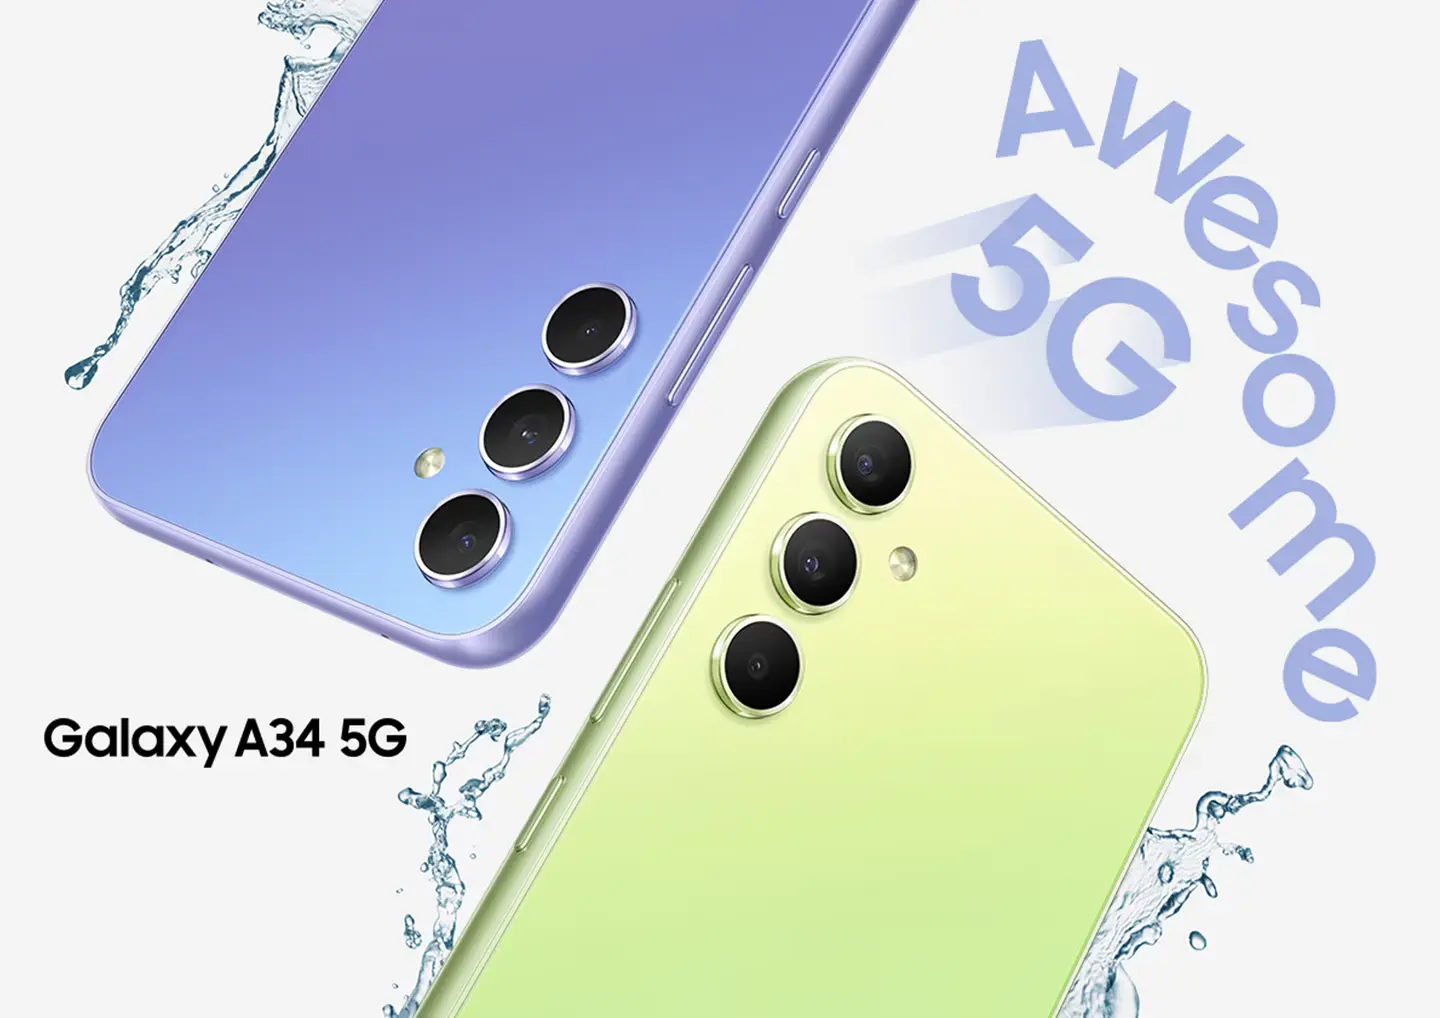 Dos Galaxy A34 5G muestran la mitad superior de la parte trasera, uno en Awesome Violet y el otro en Awesome Lime. Gotas de agua salpican alrededor de los dispositivos. Increible 5G.